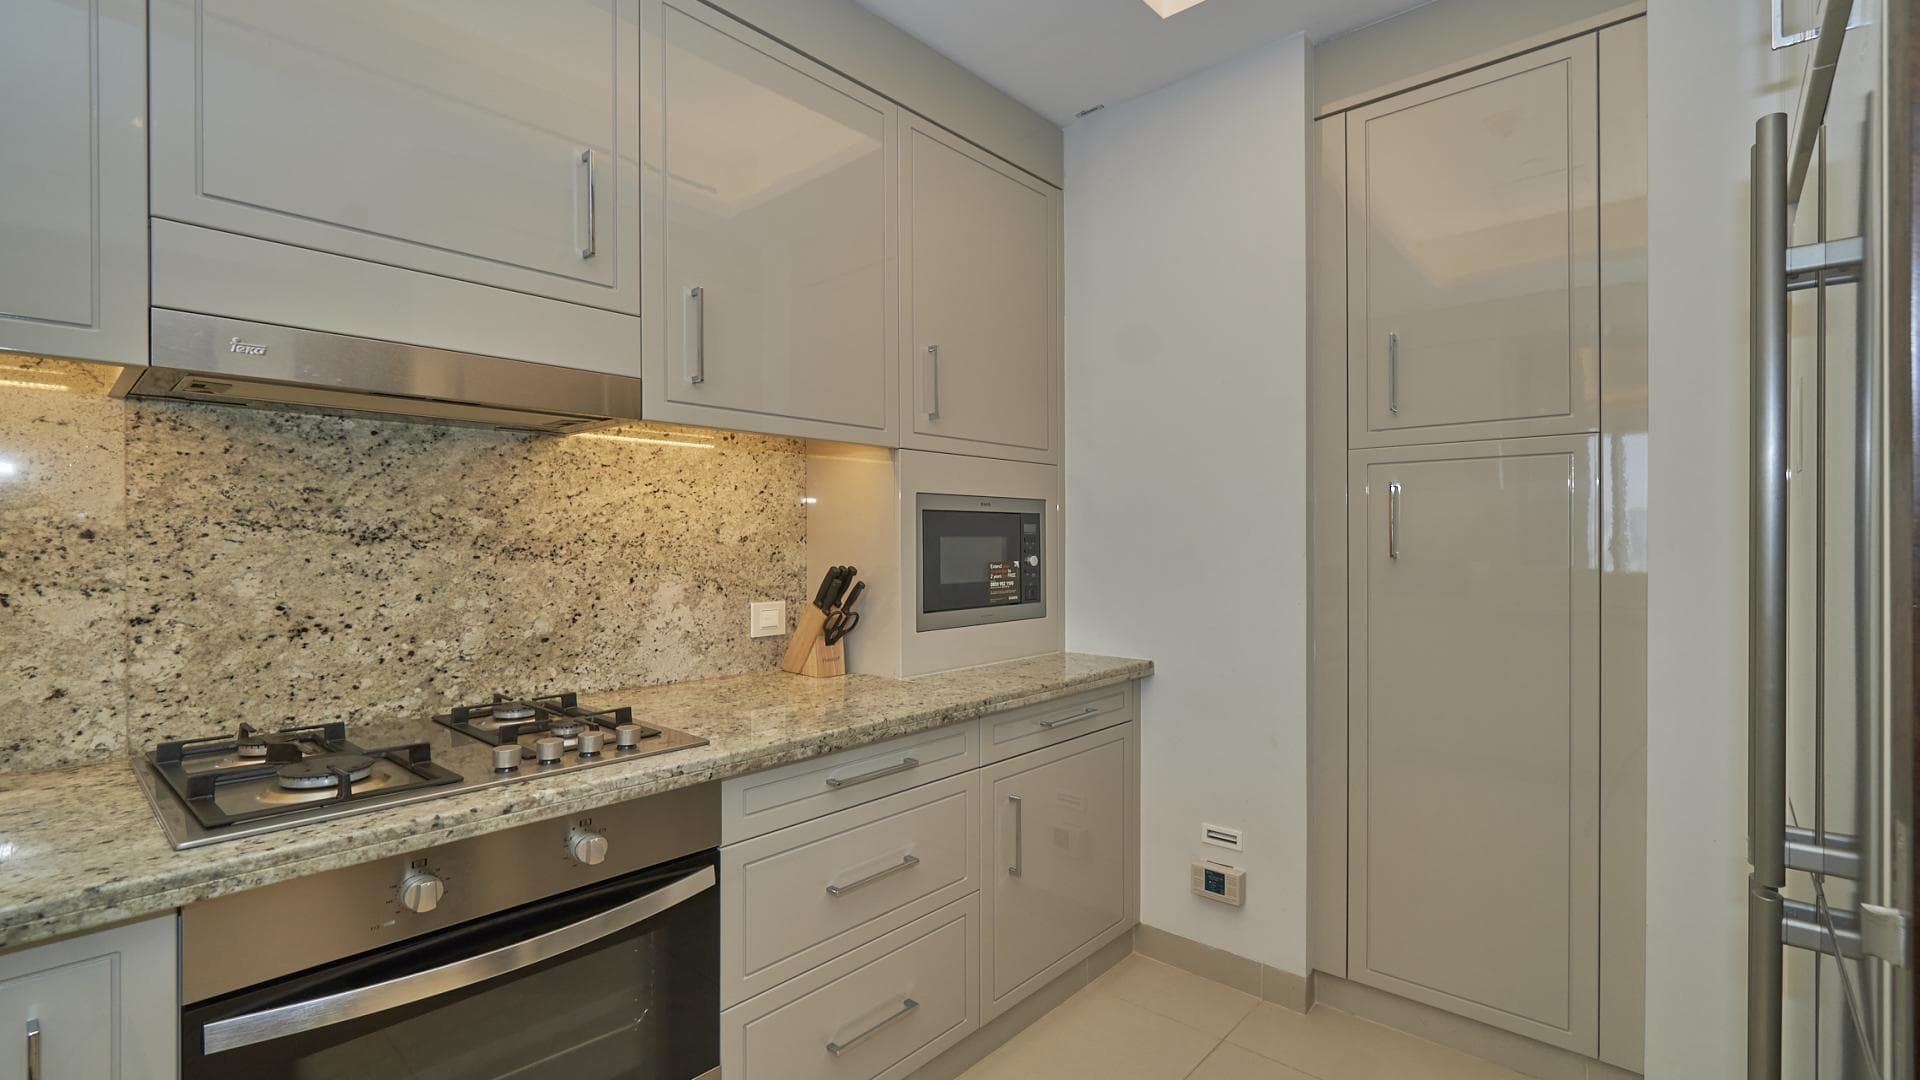 2 Bedroom Apartment For Rent Al Thamam 09 Lp36577 710423eea1ba4c0.jpg